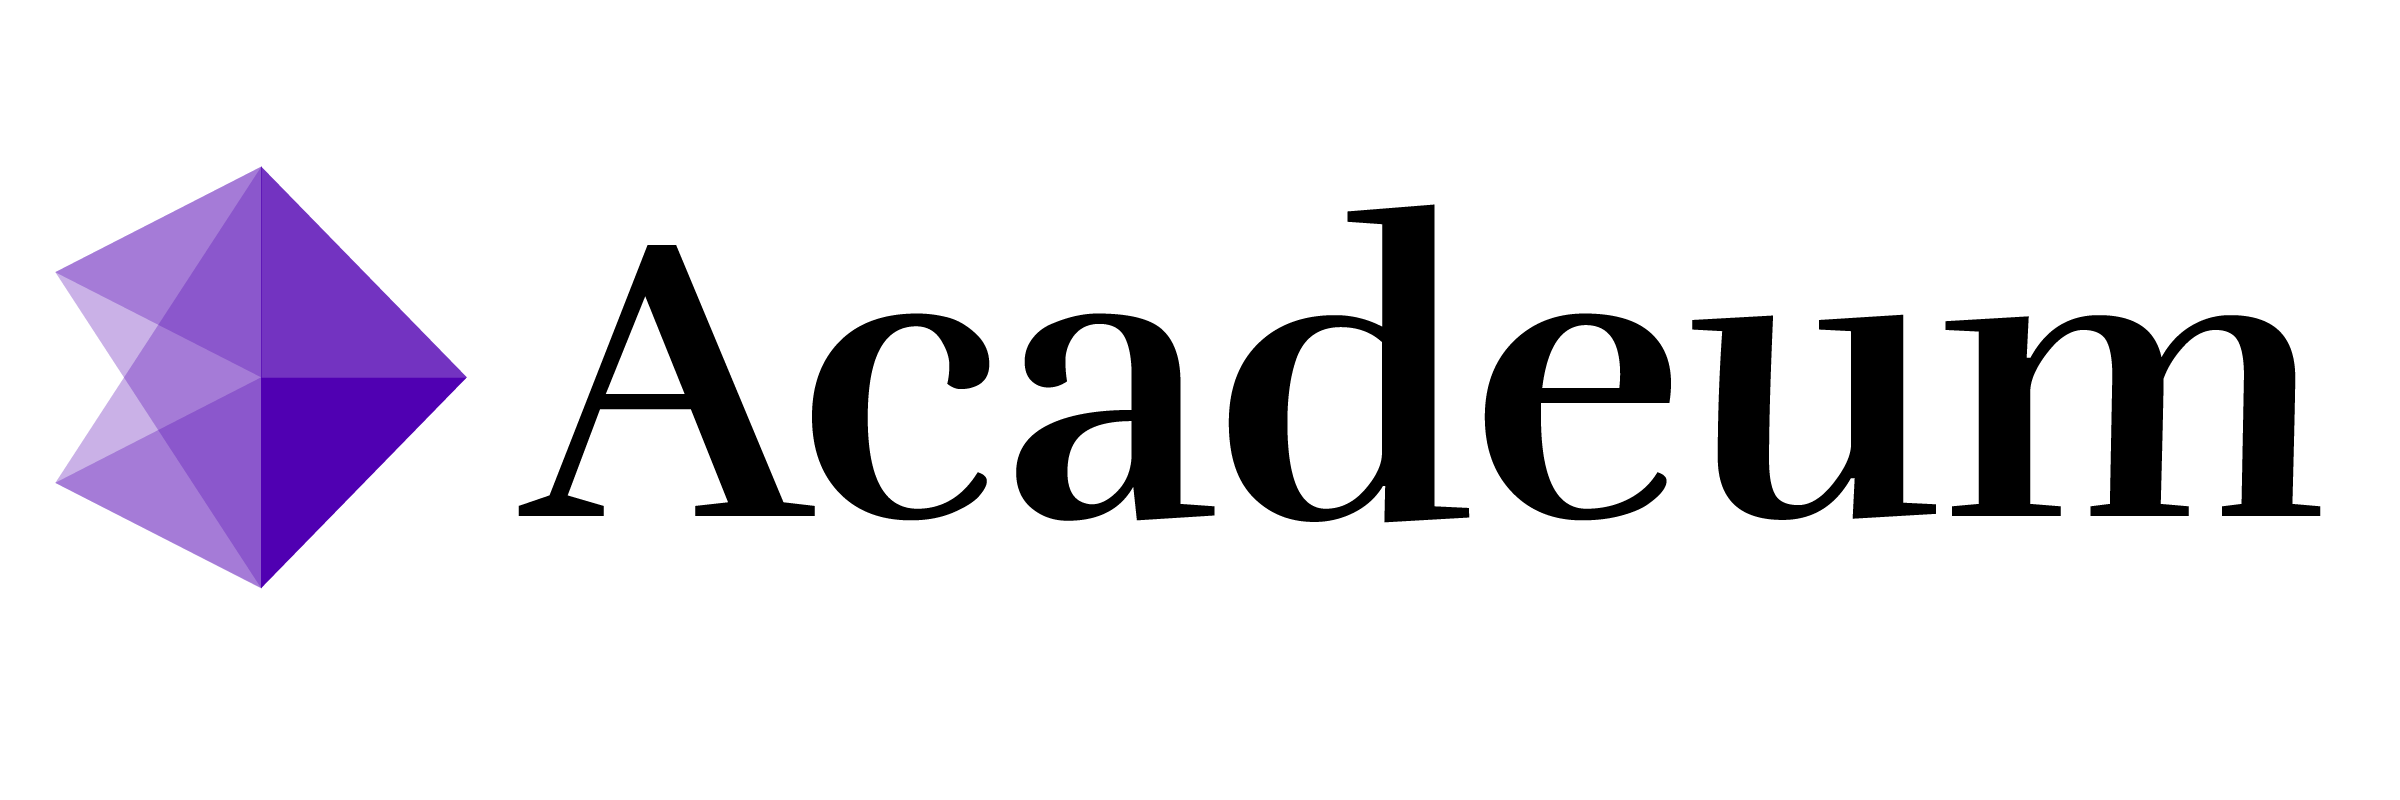 Acadeum logo